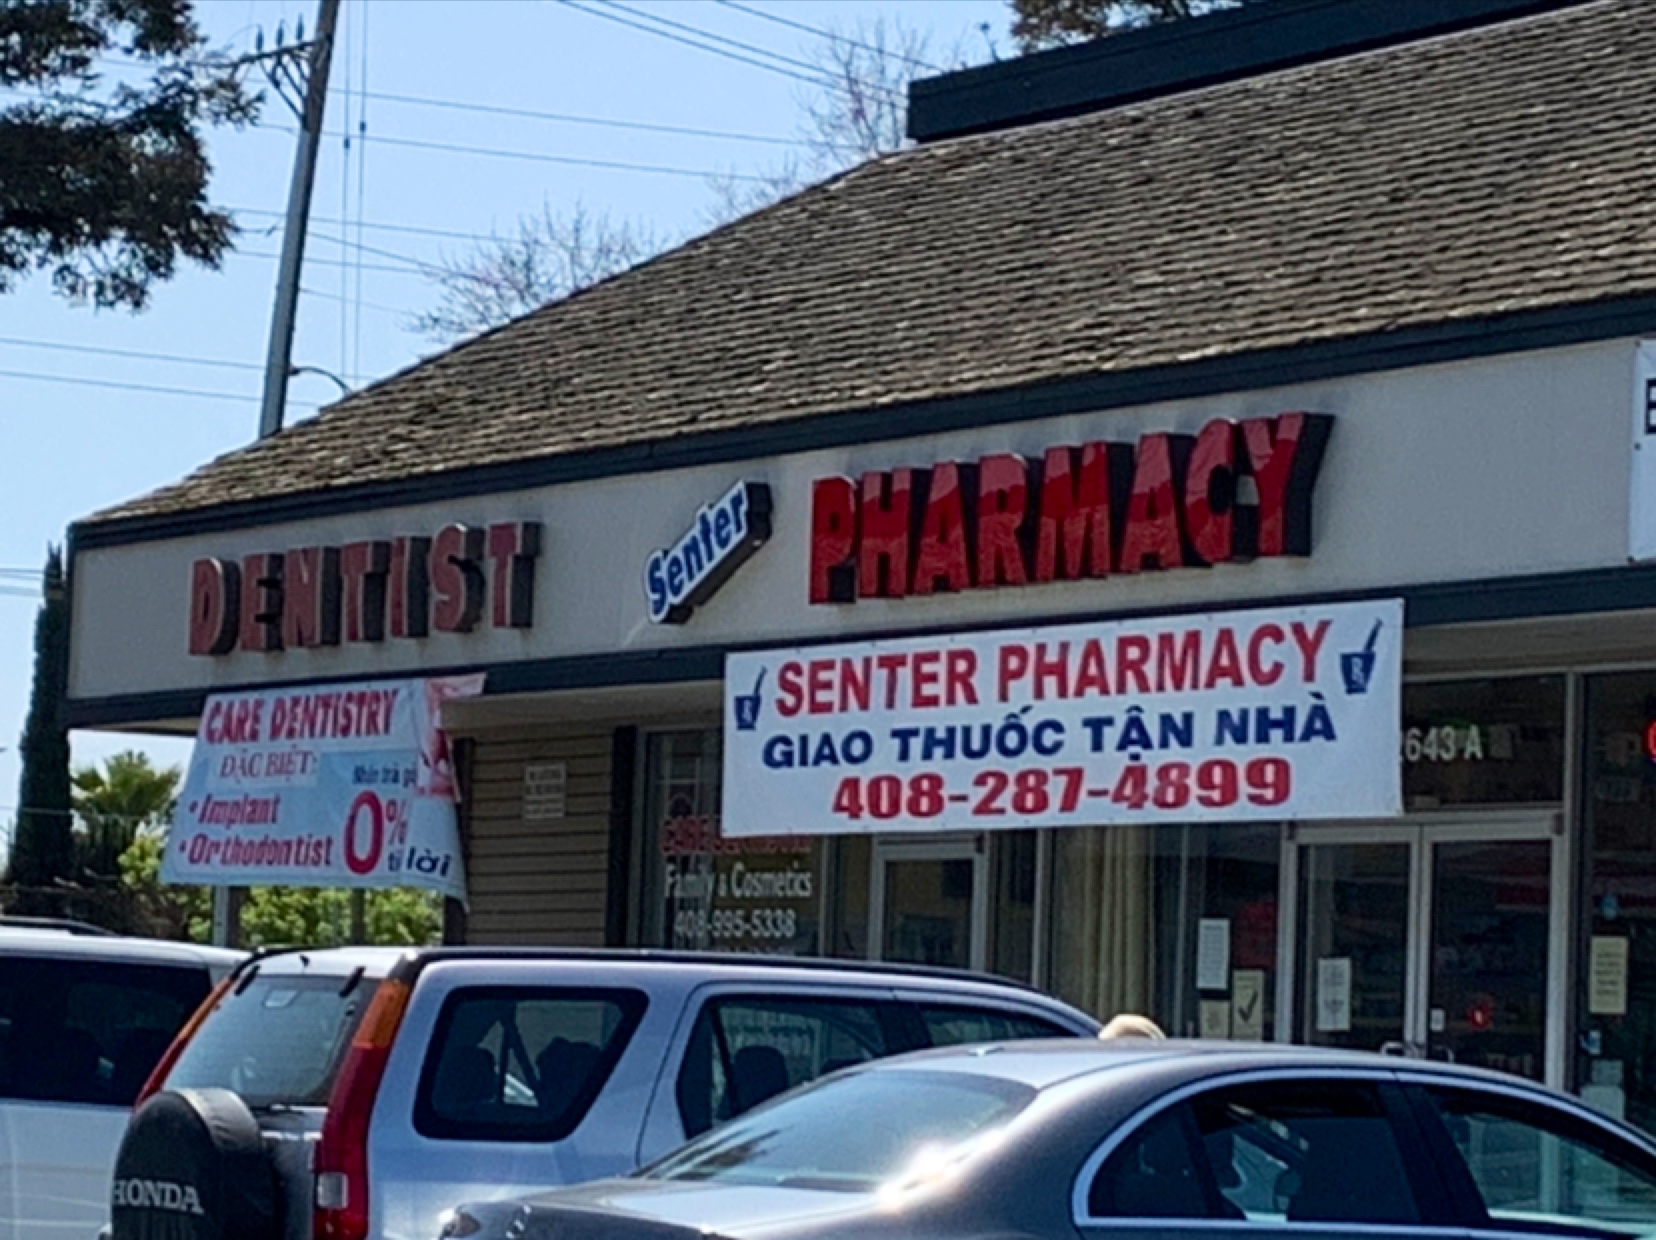 Senter Pharmacy